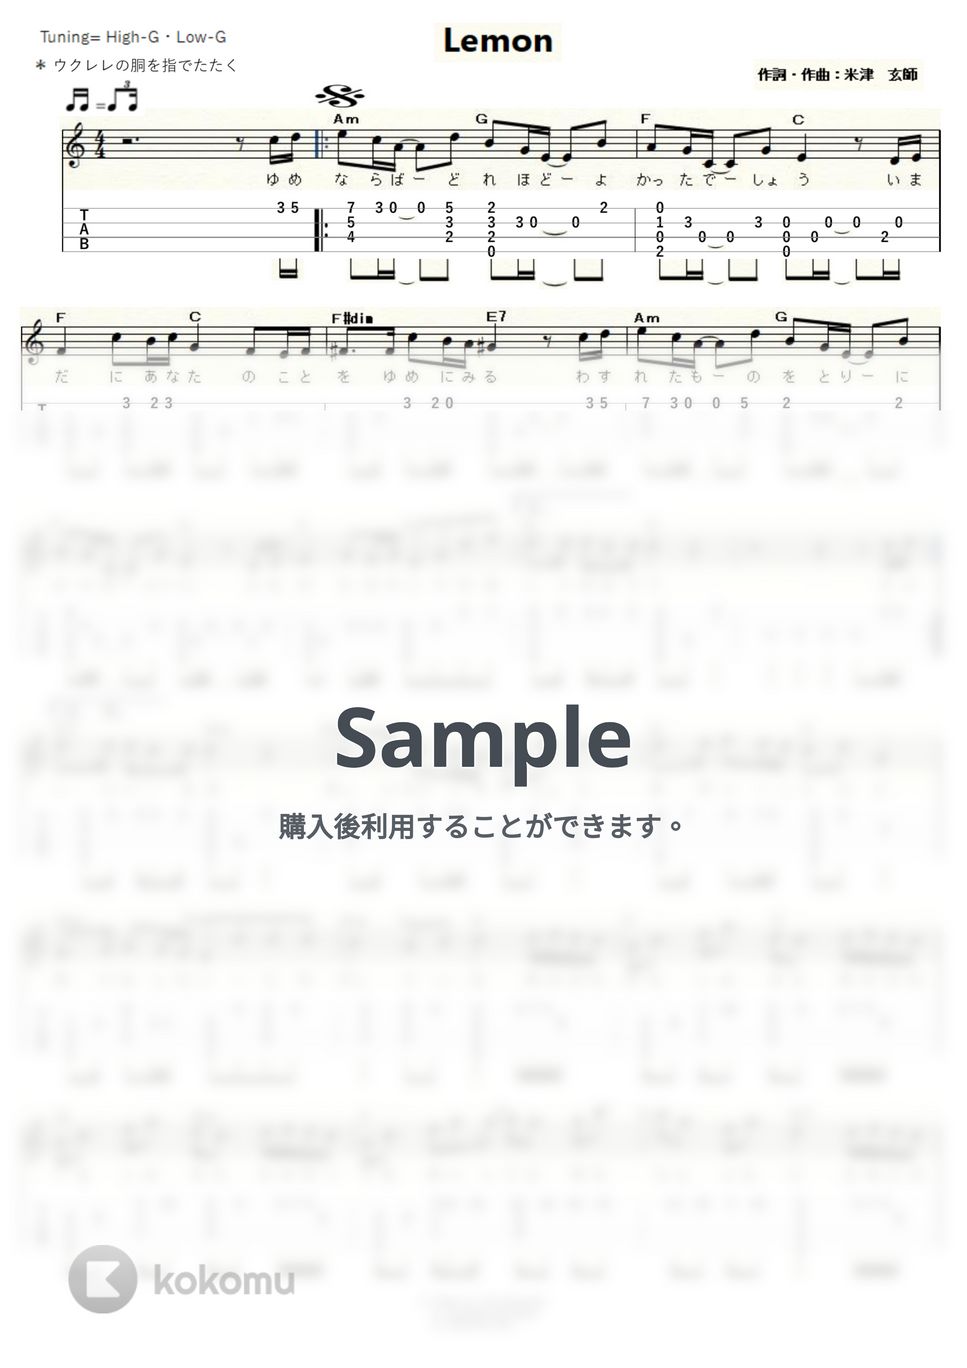 米津玄師 - Lemon (ｳｸﾚﾚｿﾛ / High-G・Low-G / 上級) by ukulelepapa